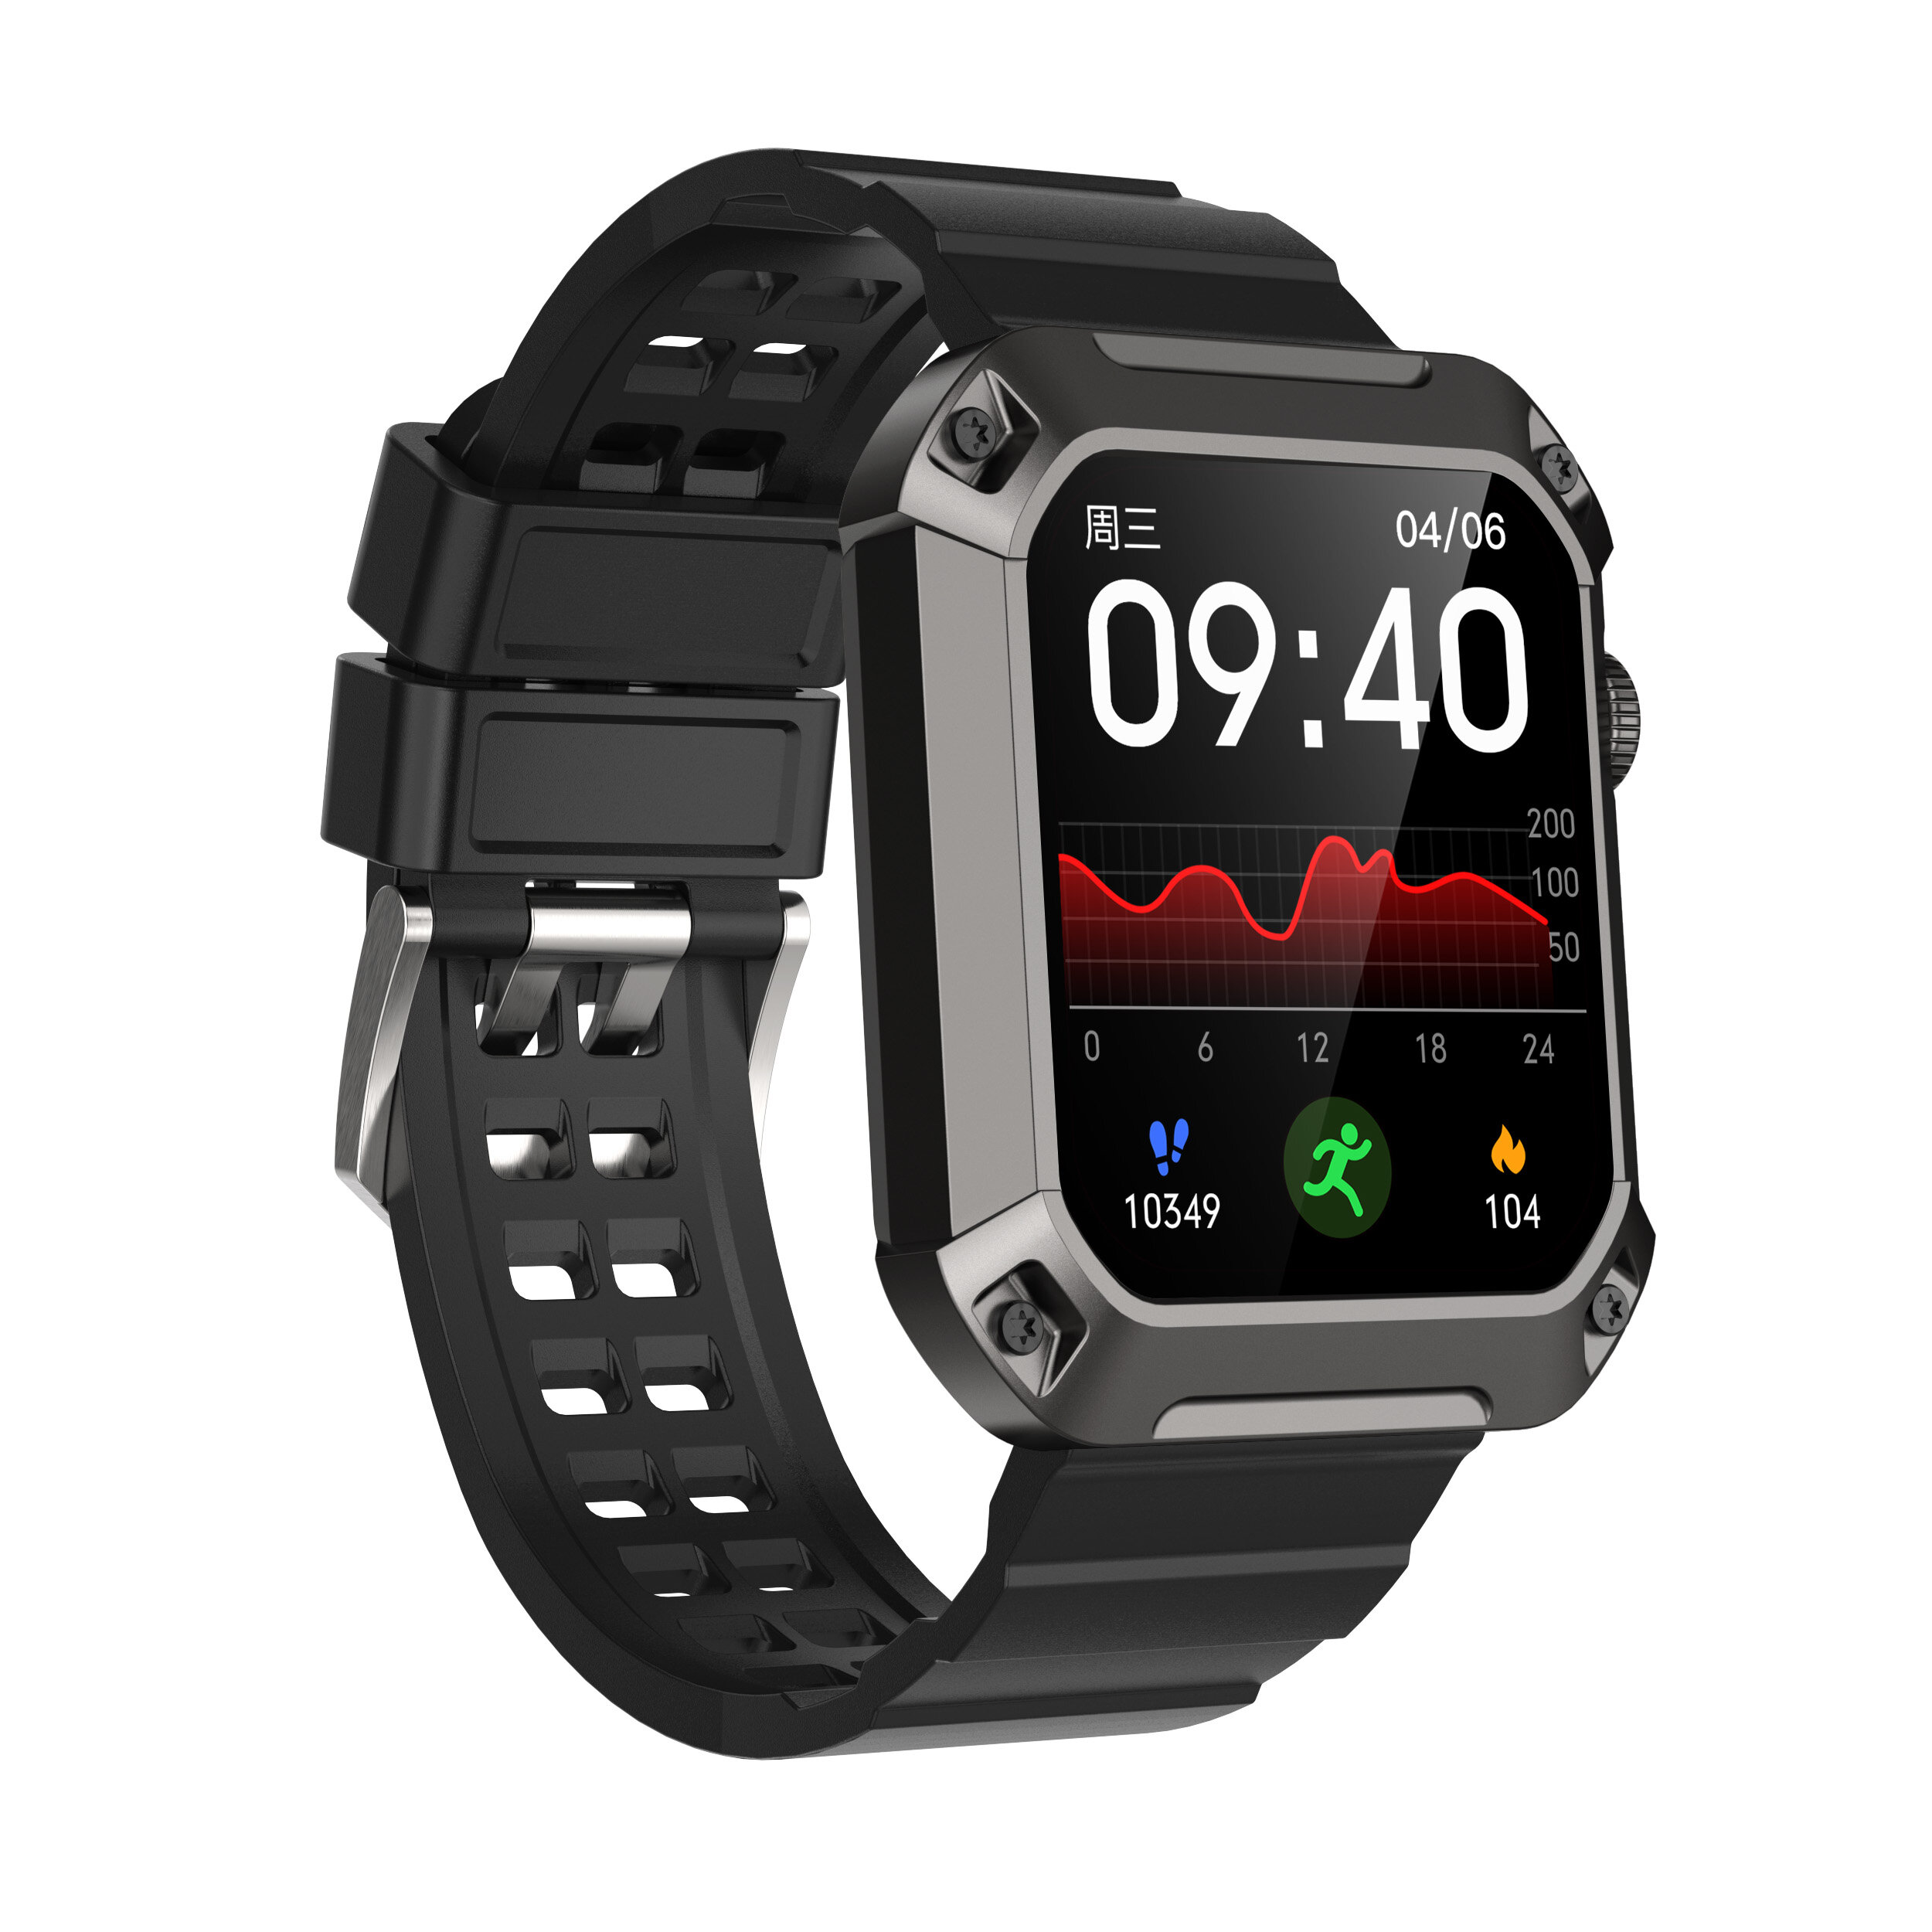 Στα 29.29 € χαμηλότερη τιμή ως σήμερα από αποθήκη Κίνας | Rogbid S2 5ATM IP69K Waterproof 1.83 inch HD Screen bluetooth Call Heart Rate Blood Pressure SpO2 Monitor Fitness Tracker Outdoor Rugged Smart Watch